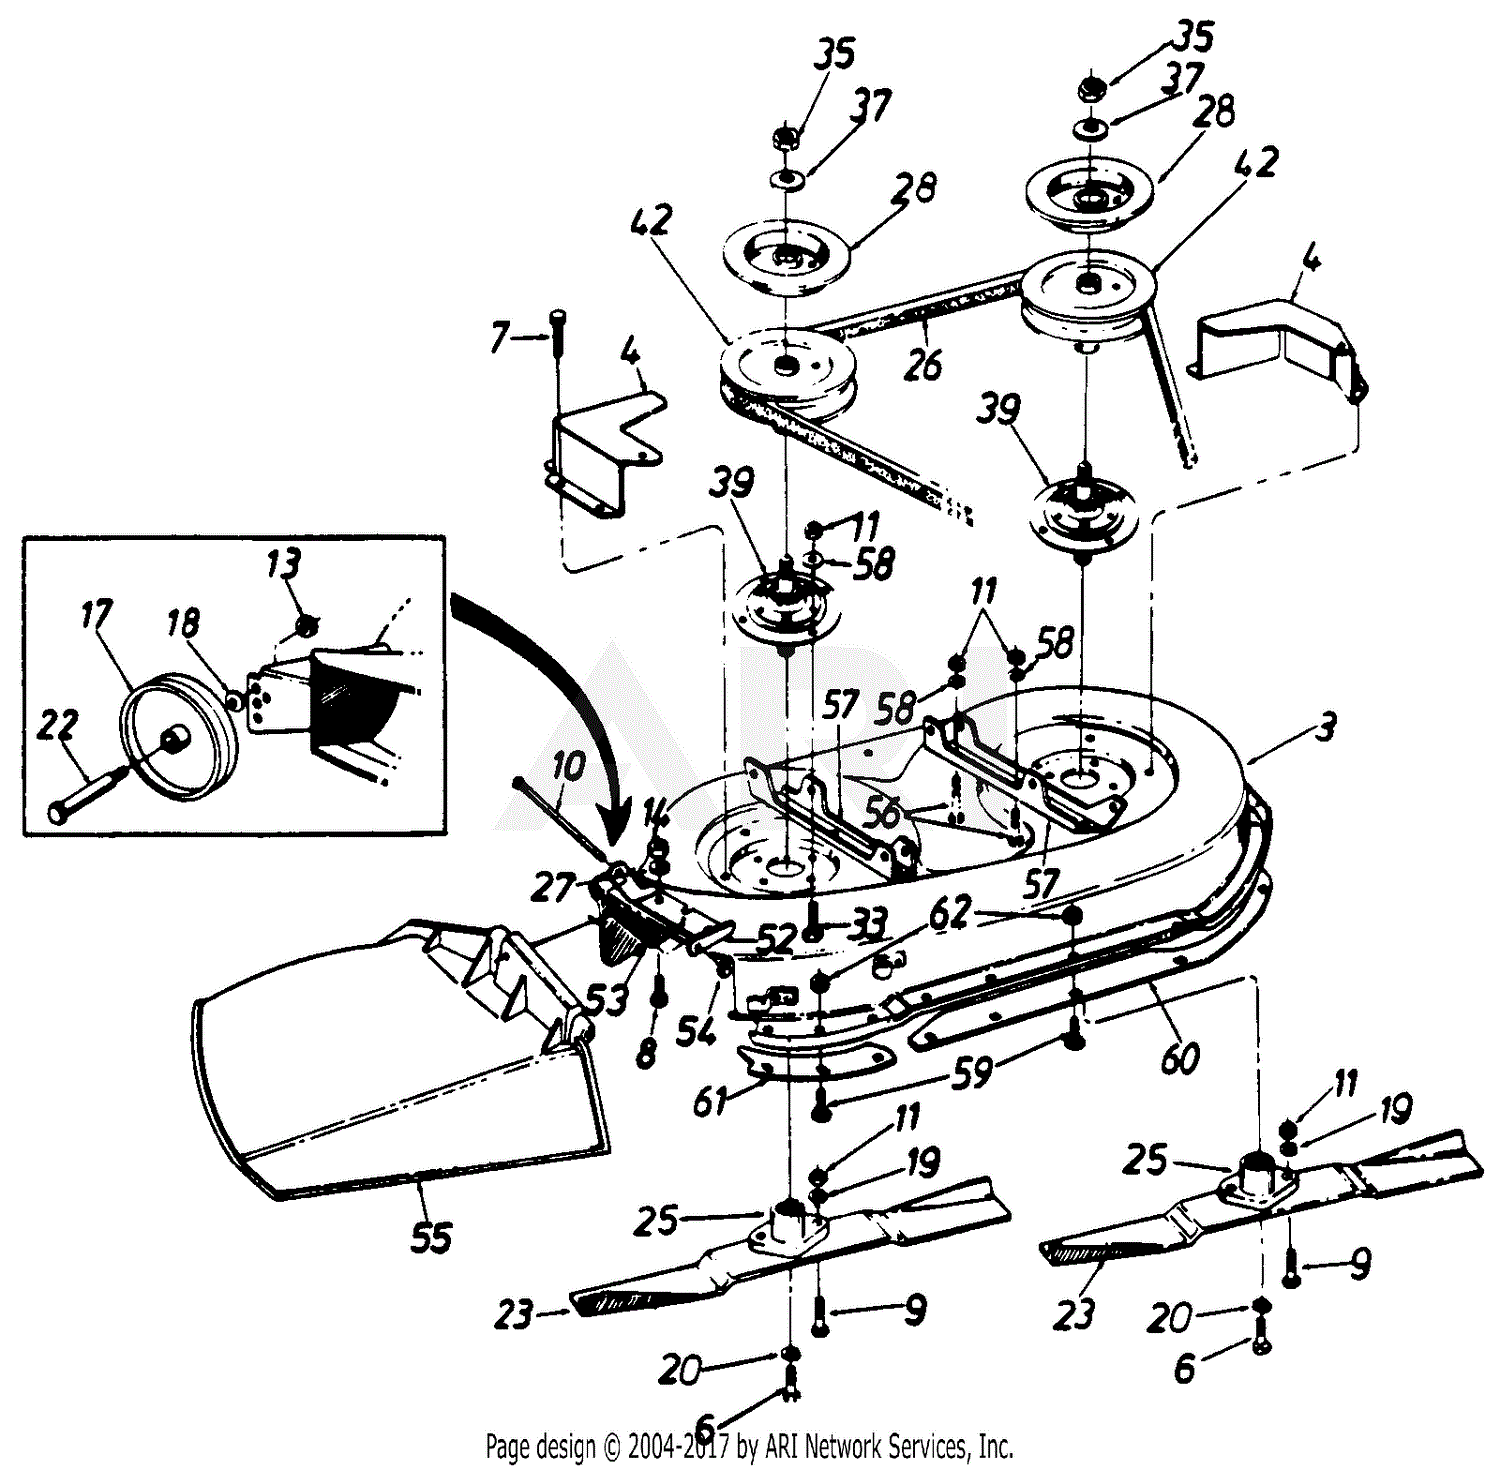 John deere 42 inch mower deck parts diagram - vmrewa